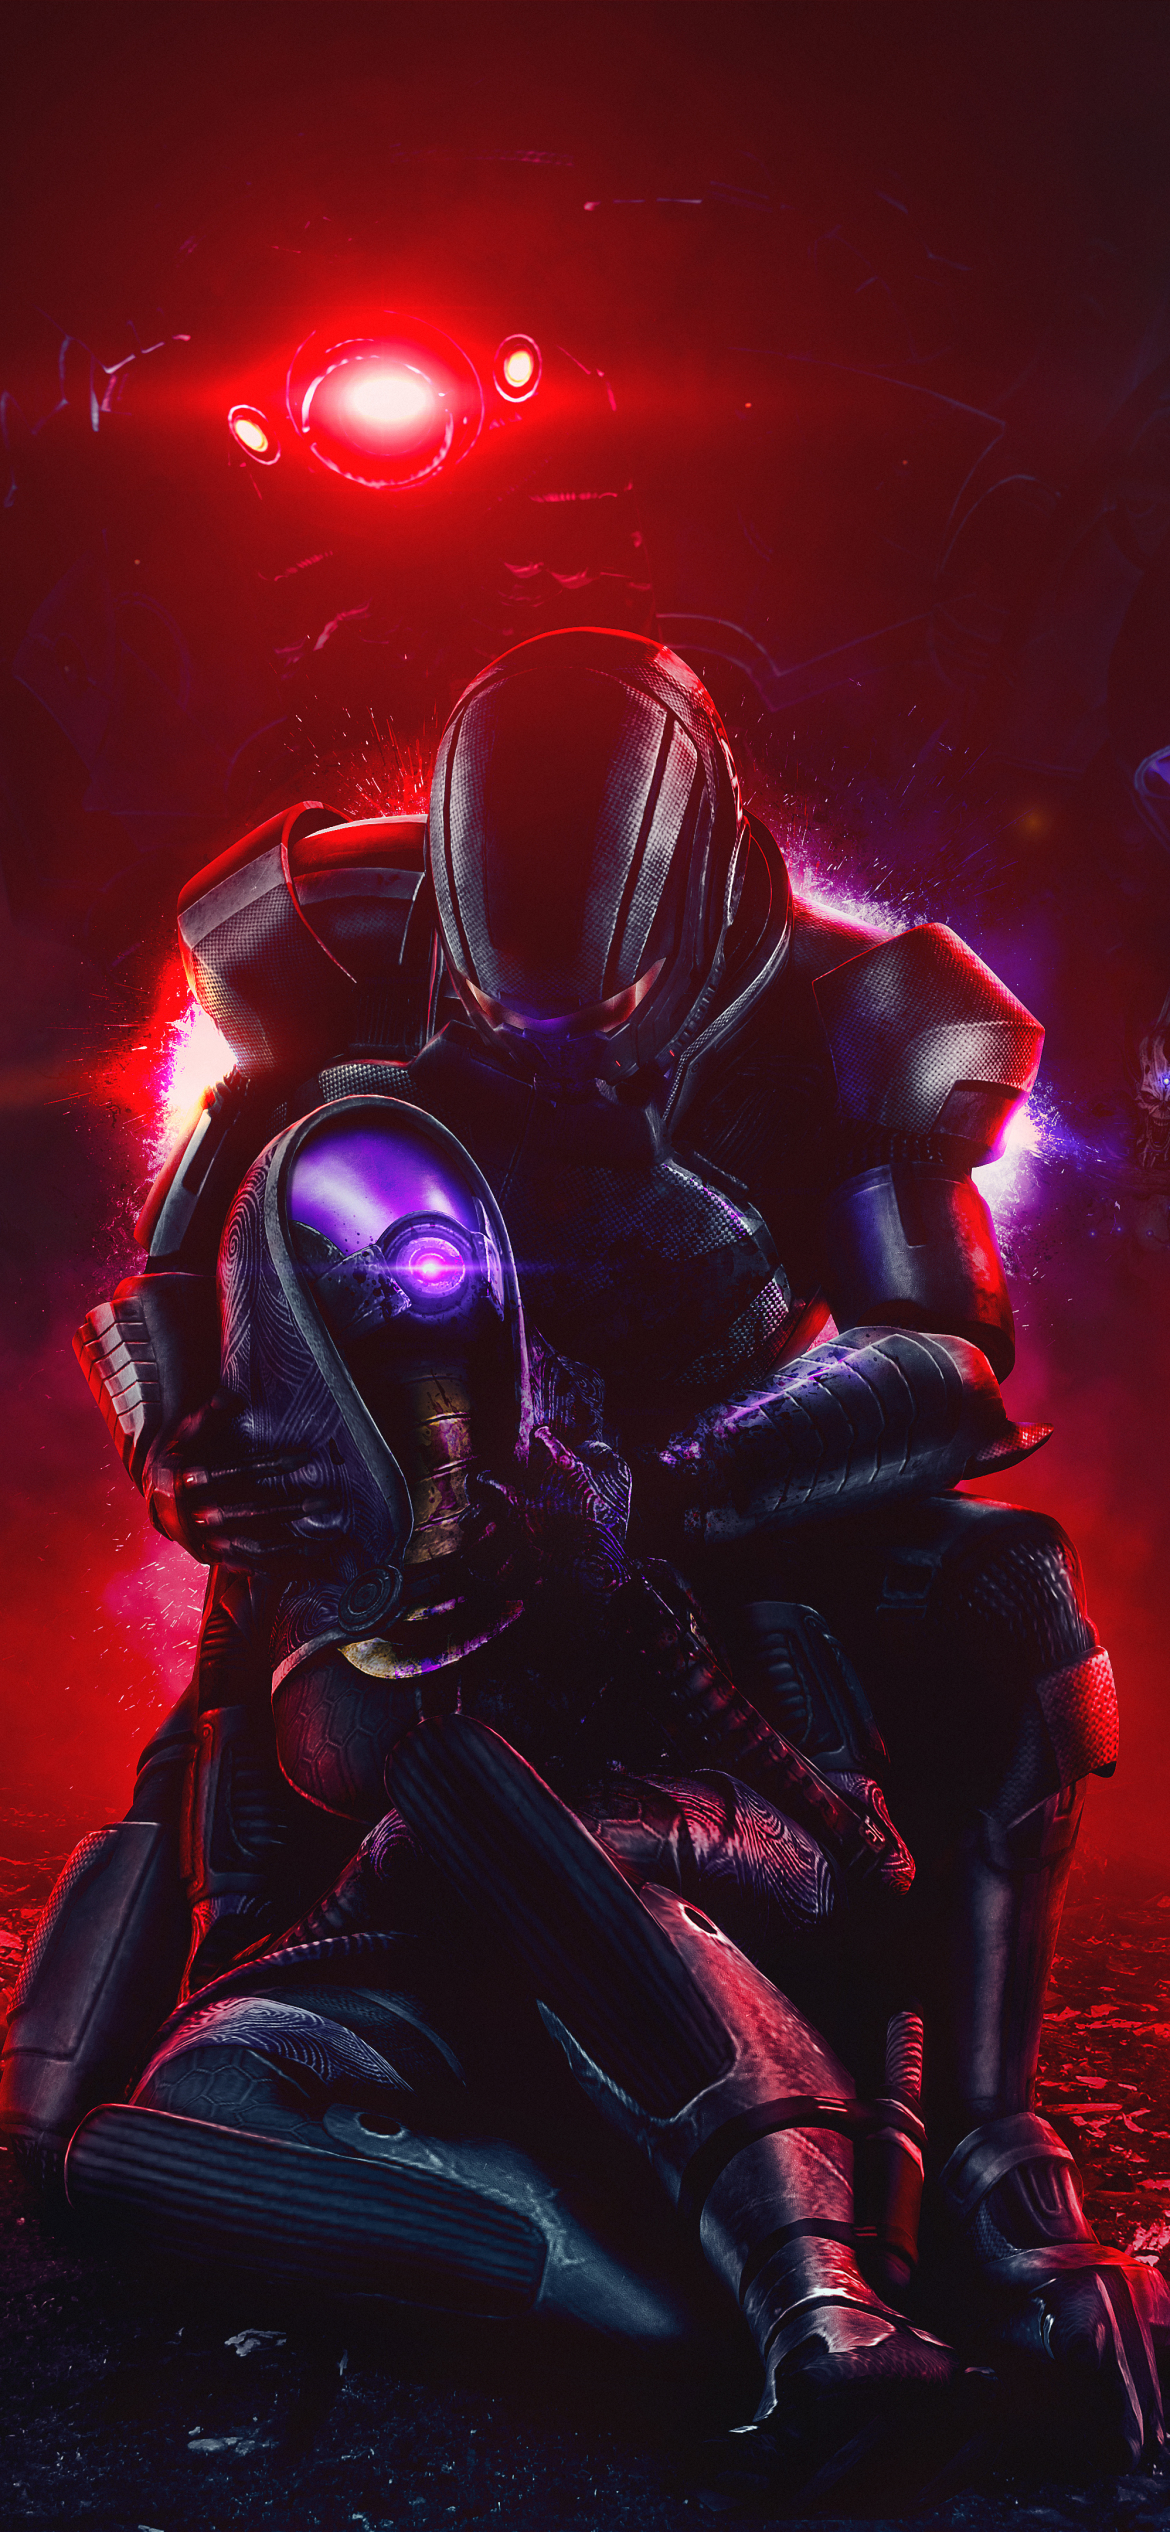 Descarga gratuita de fondo de pantalla para móvil de Mass Effect, Videojuego, Tali'zorah, Comandante Shepard.